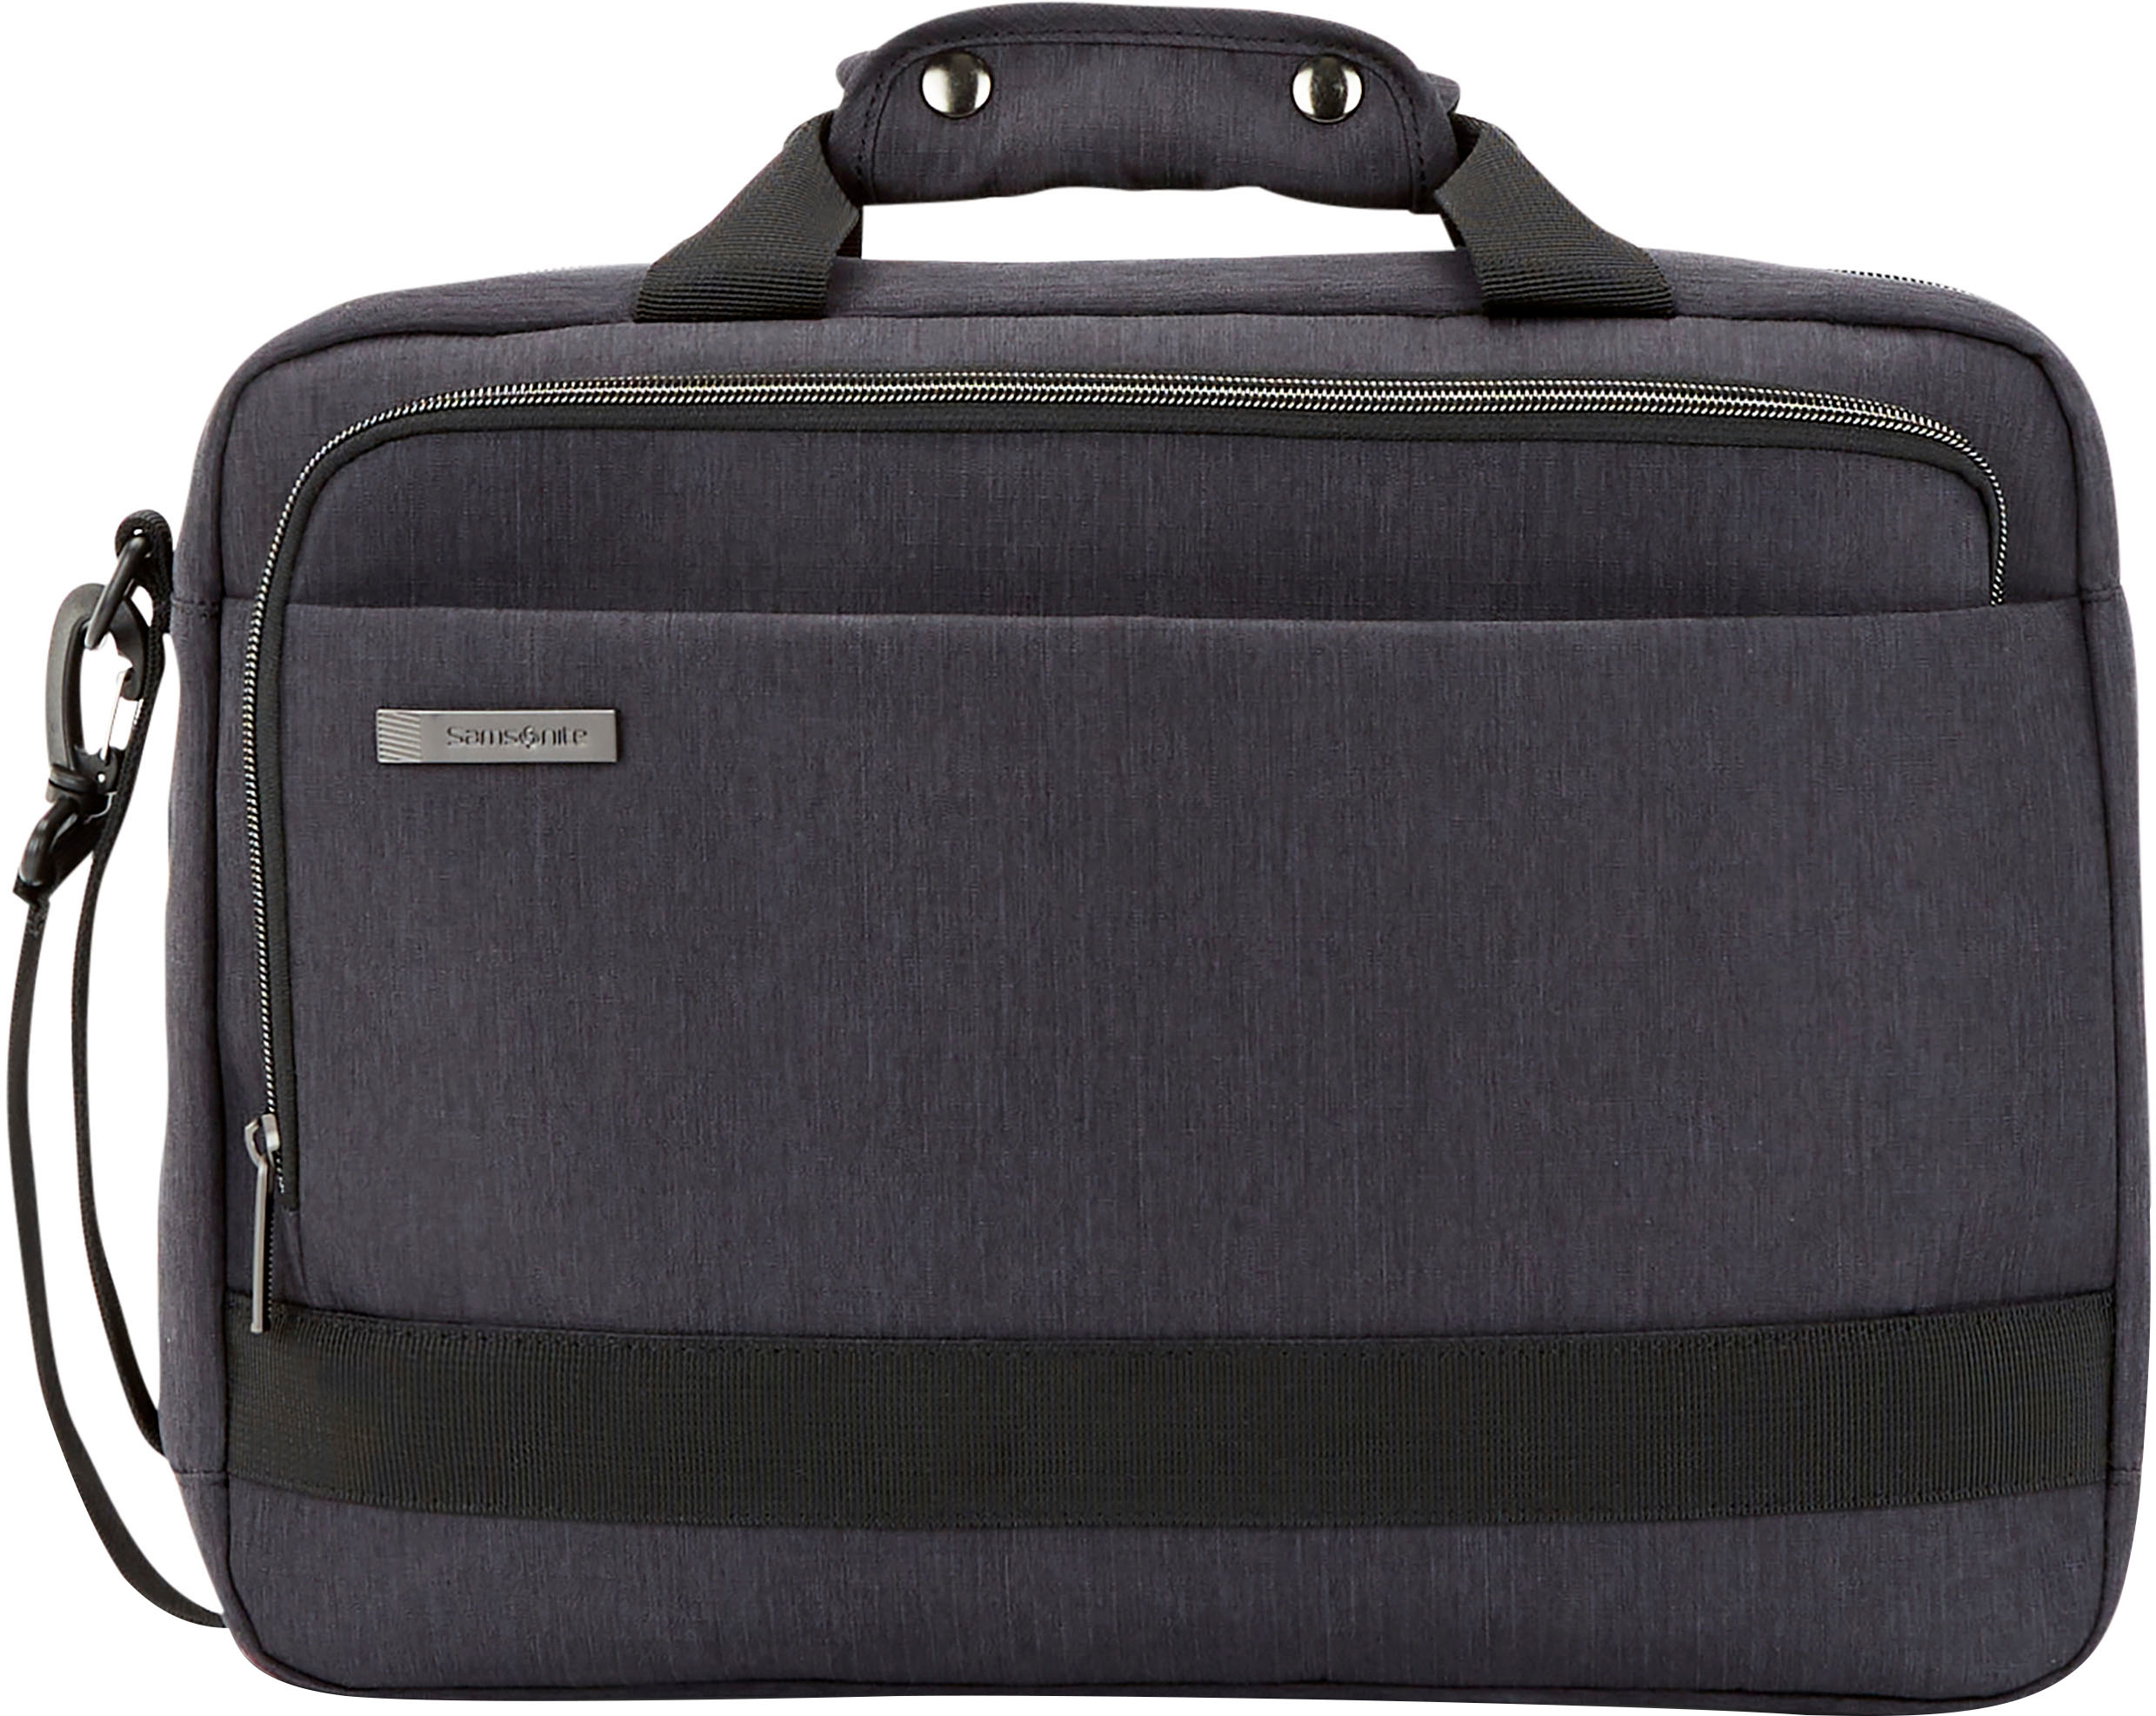 Left View: Samsonite - Aramon NXT Laptop Shuttle Bag for 17" Laptop - Black